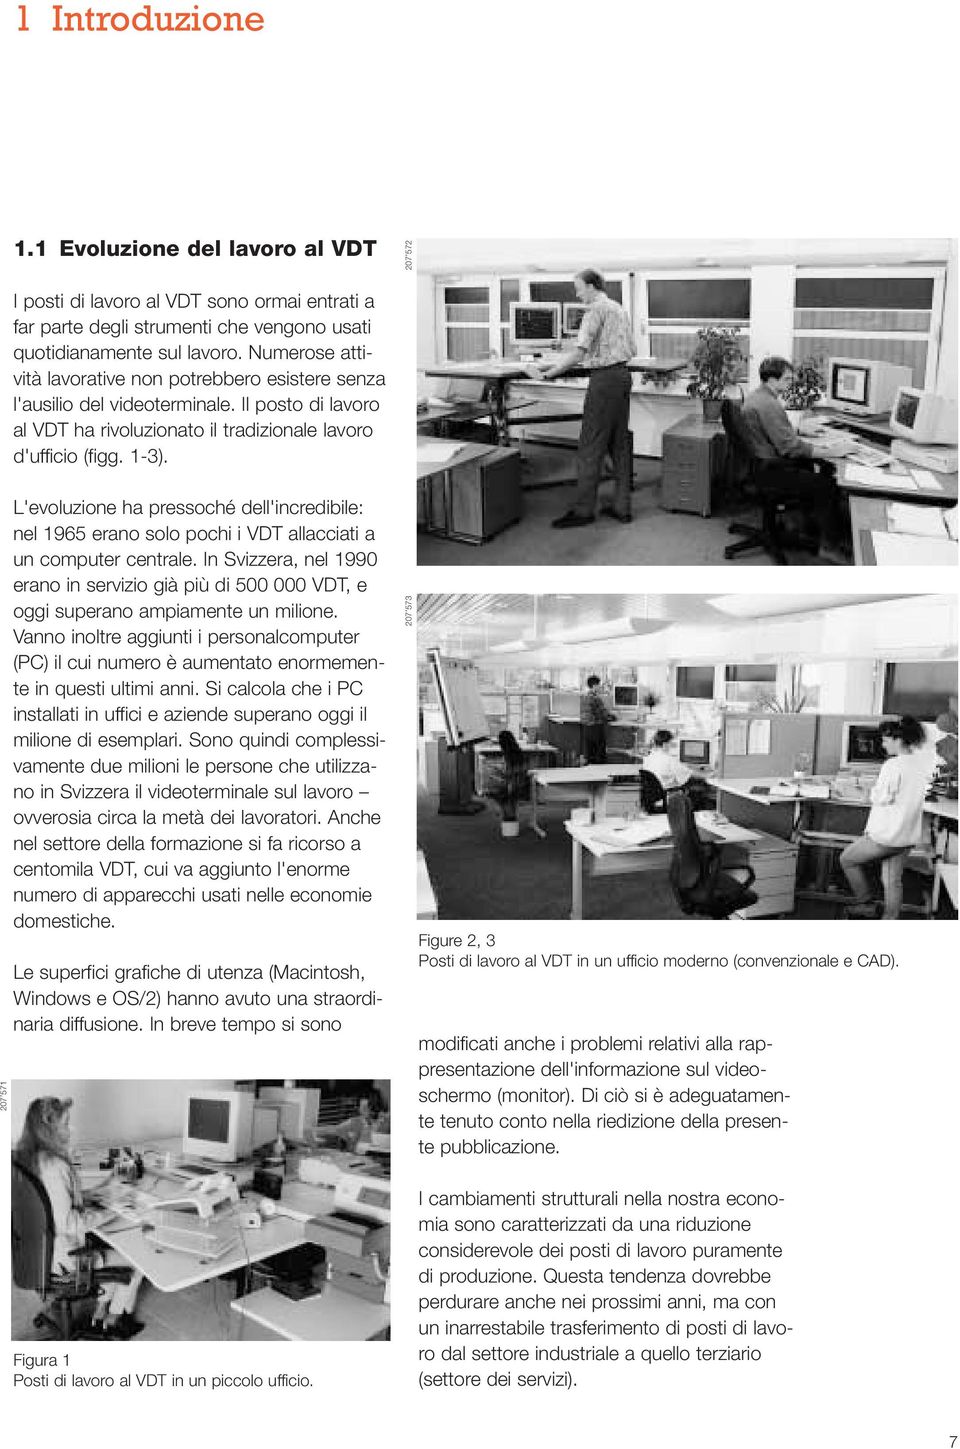 207 571 L'evoluzione ha pressoché dell'incredibile: nel 1965 erano solo pochi i VDT allacciati a un computer centrale.